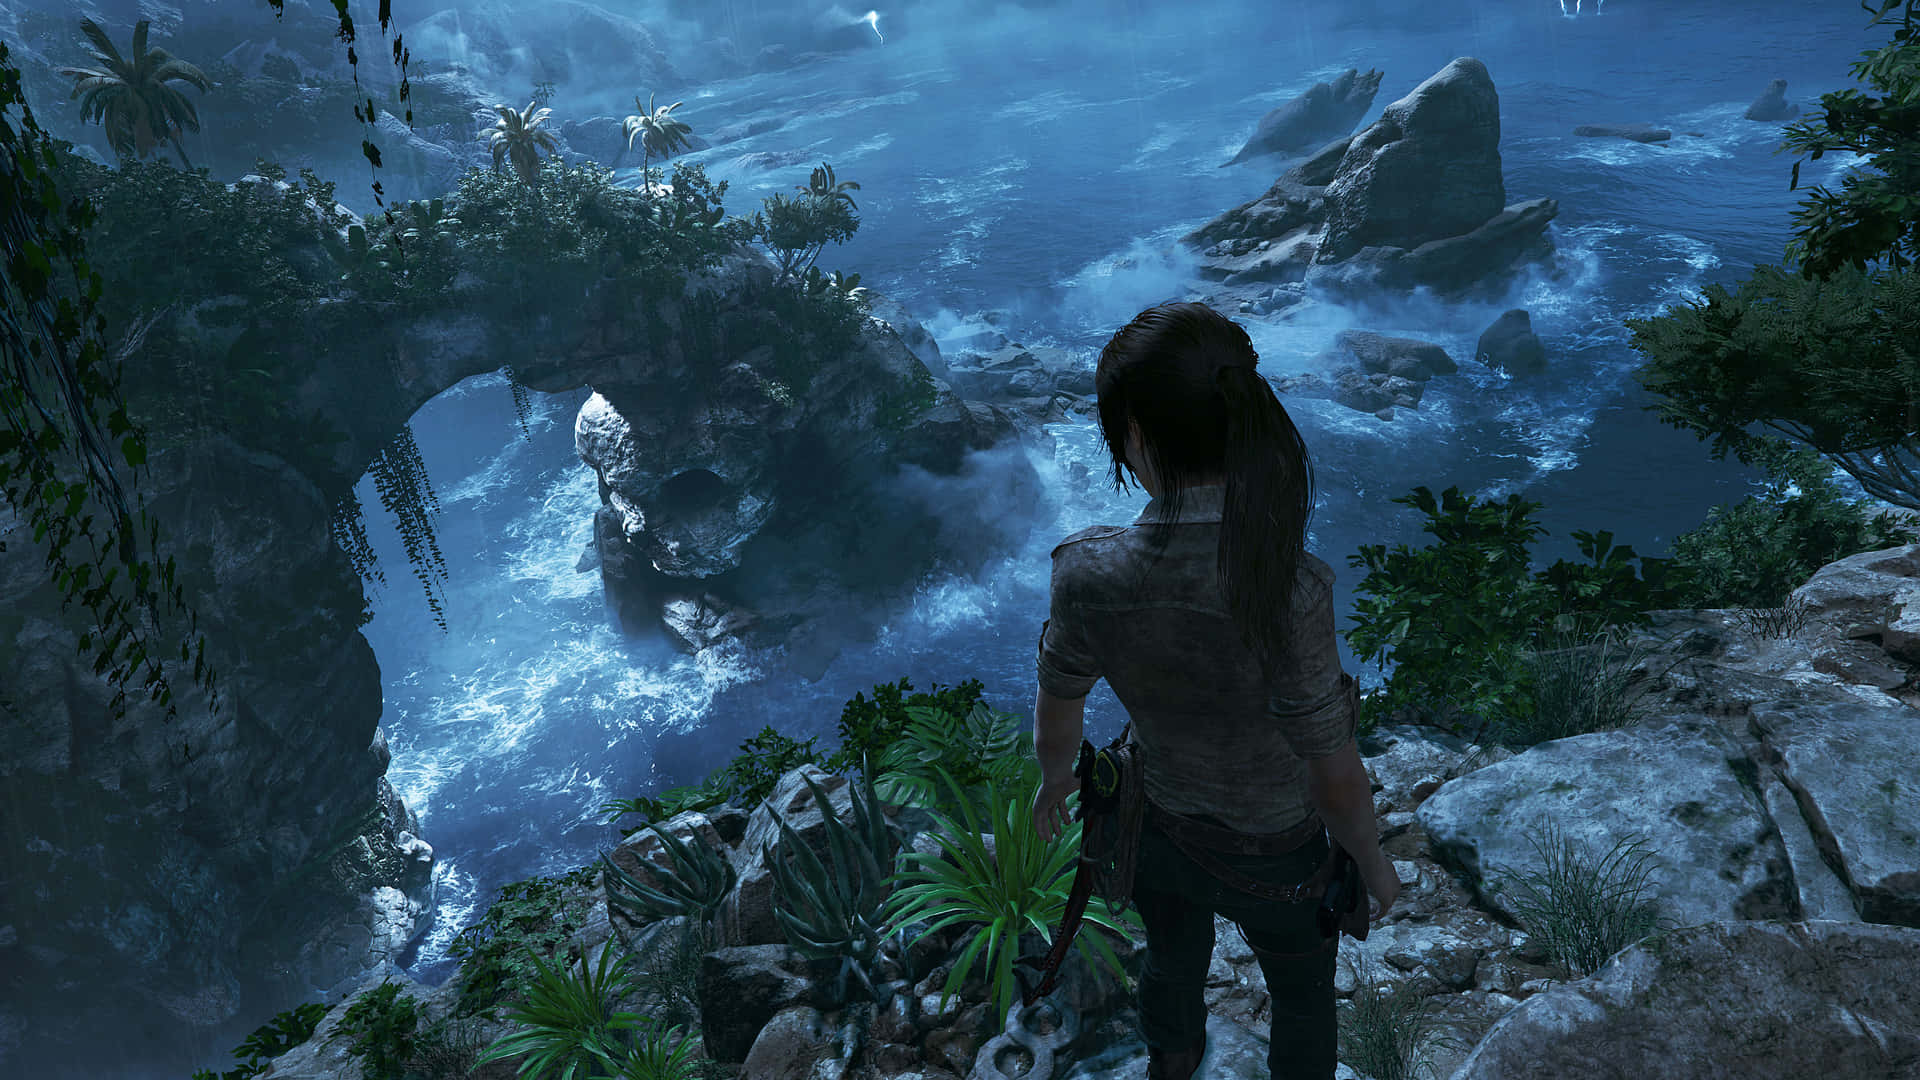 Viviun'avventura Emozionante Di Sopravvivenza In Shadow Of The Tomb Raider.